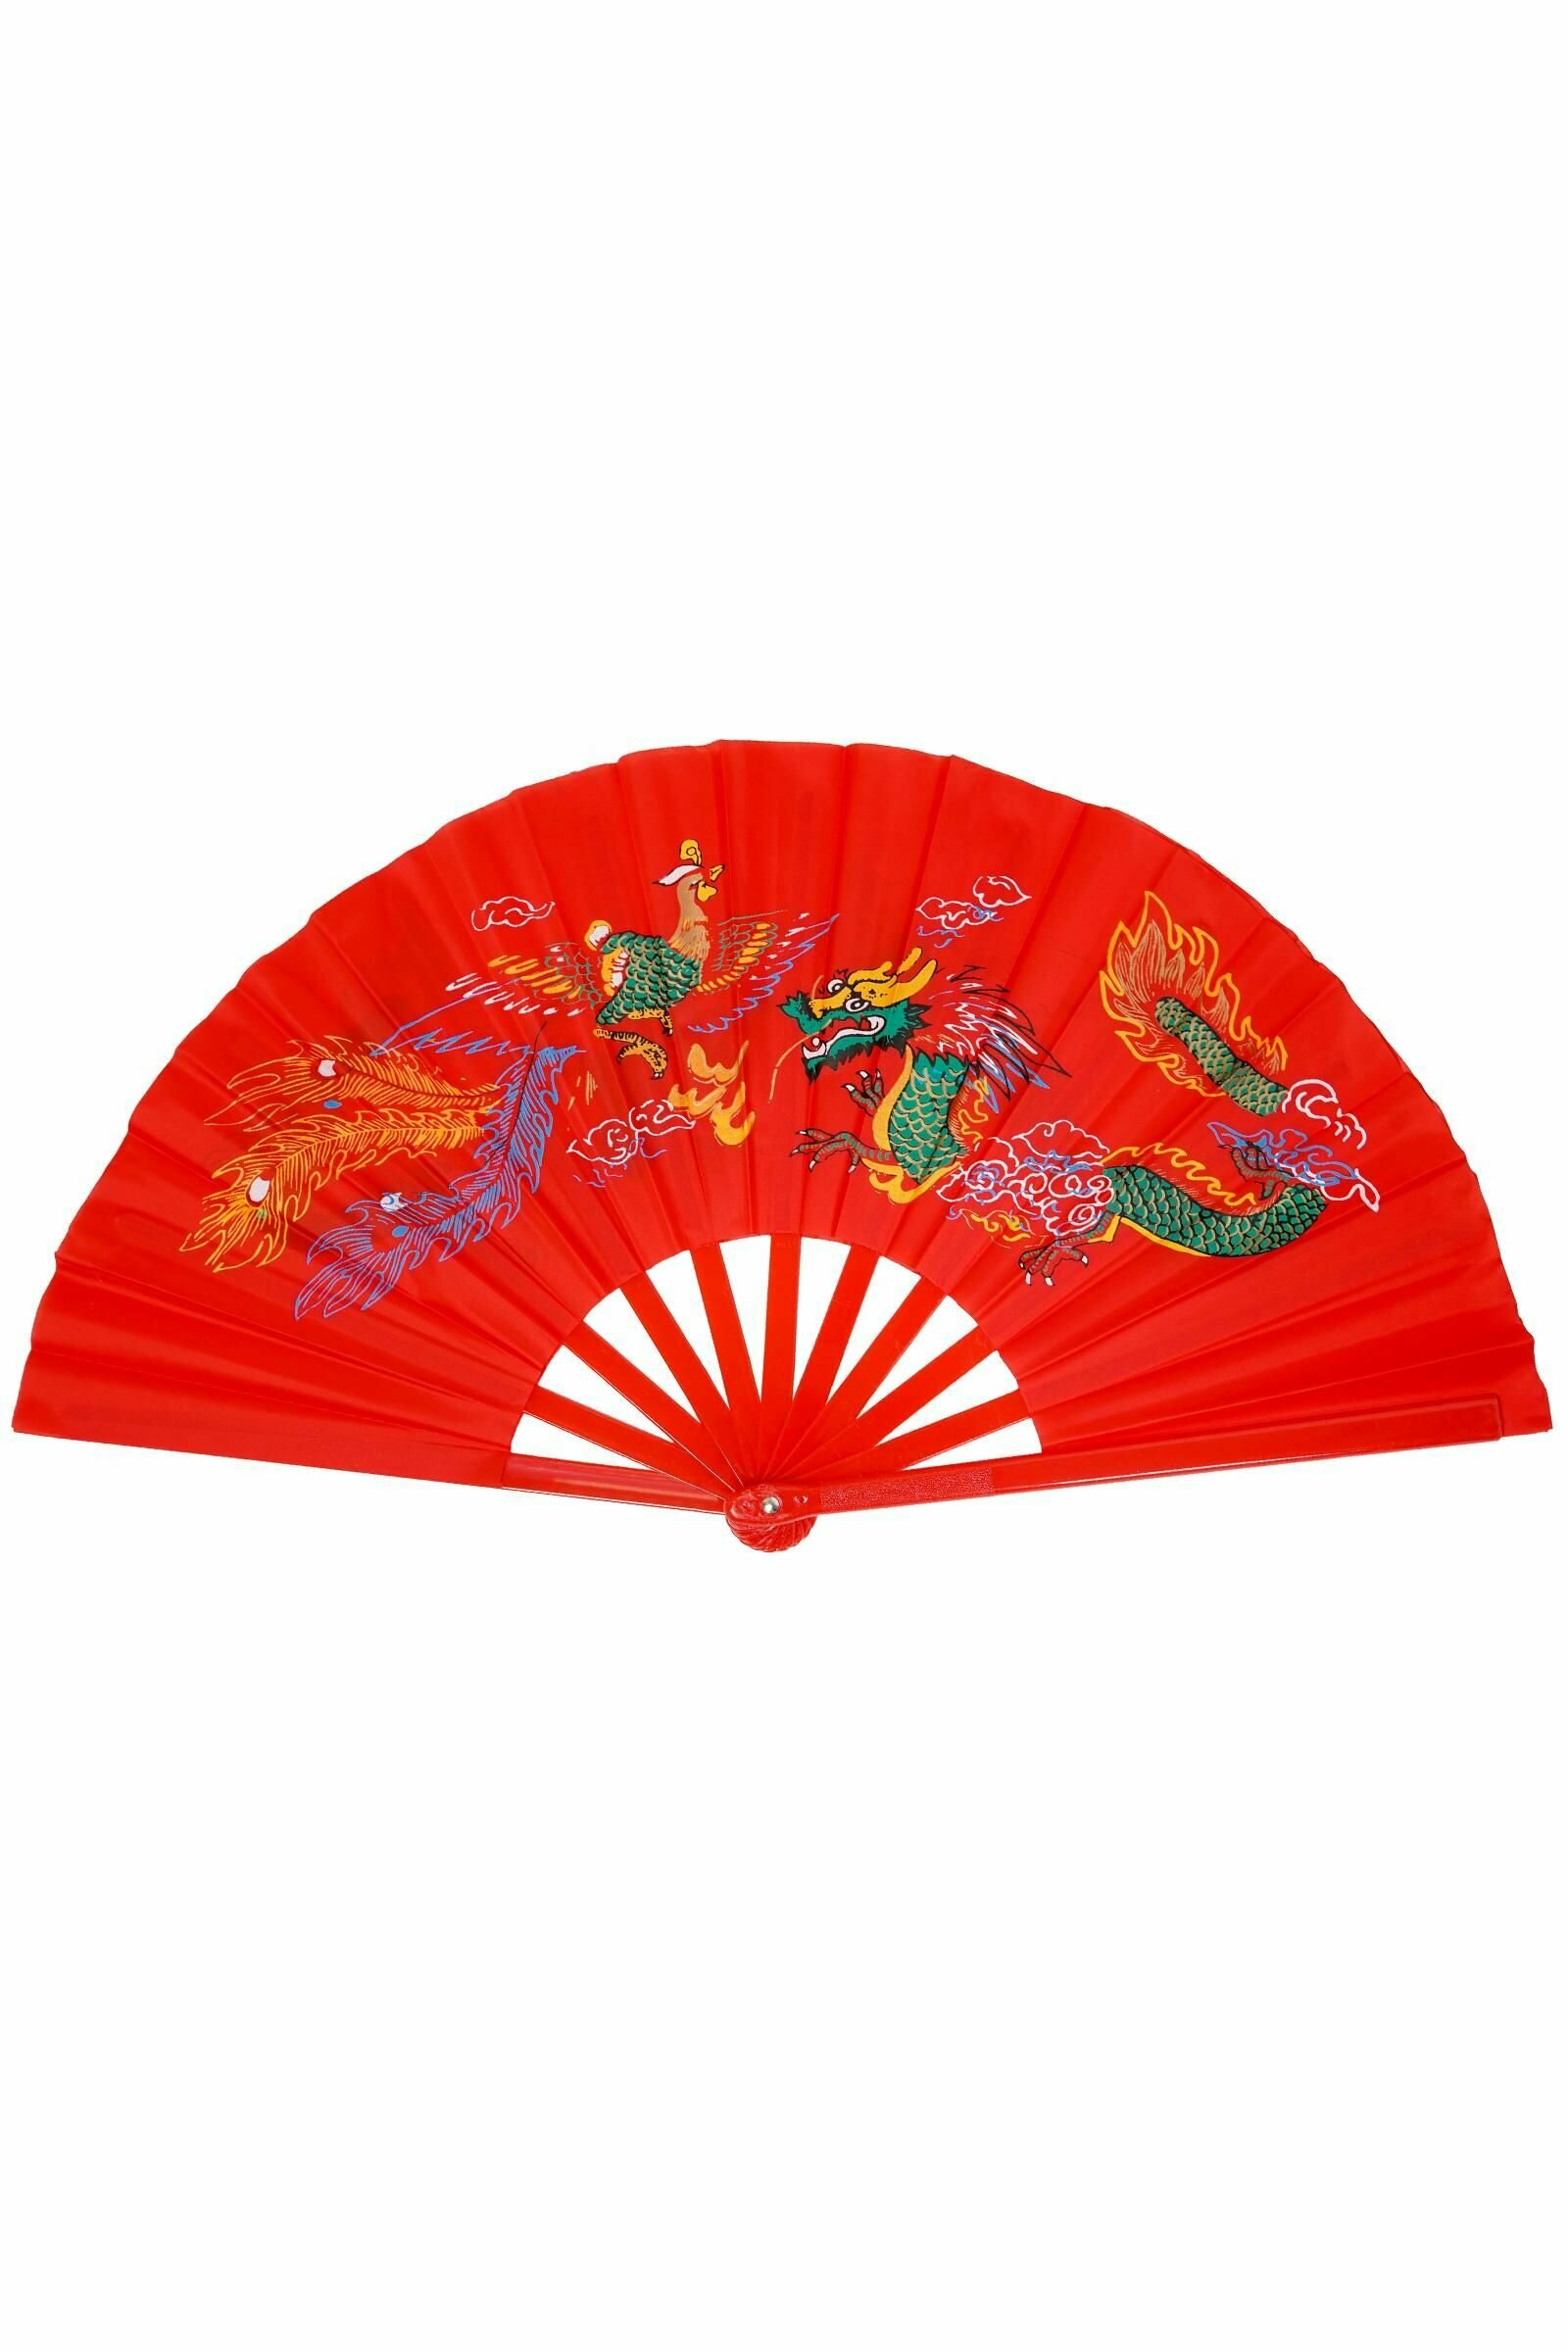 Веер складной ручной/ красный цвет, 62 см/для танцев/ веер китайский японский с рисунком дракона - фотография № 1